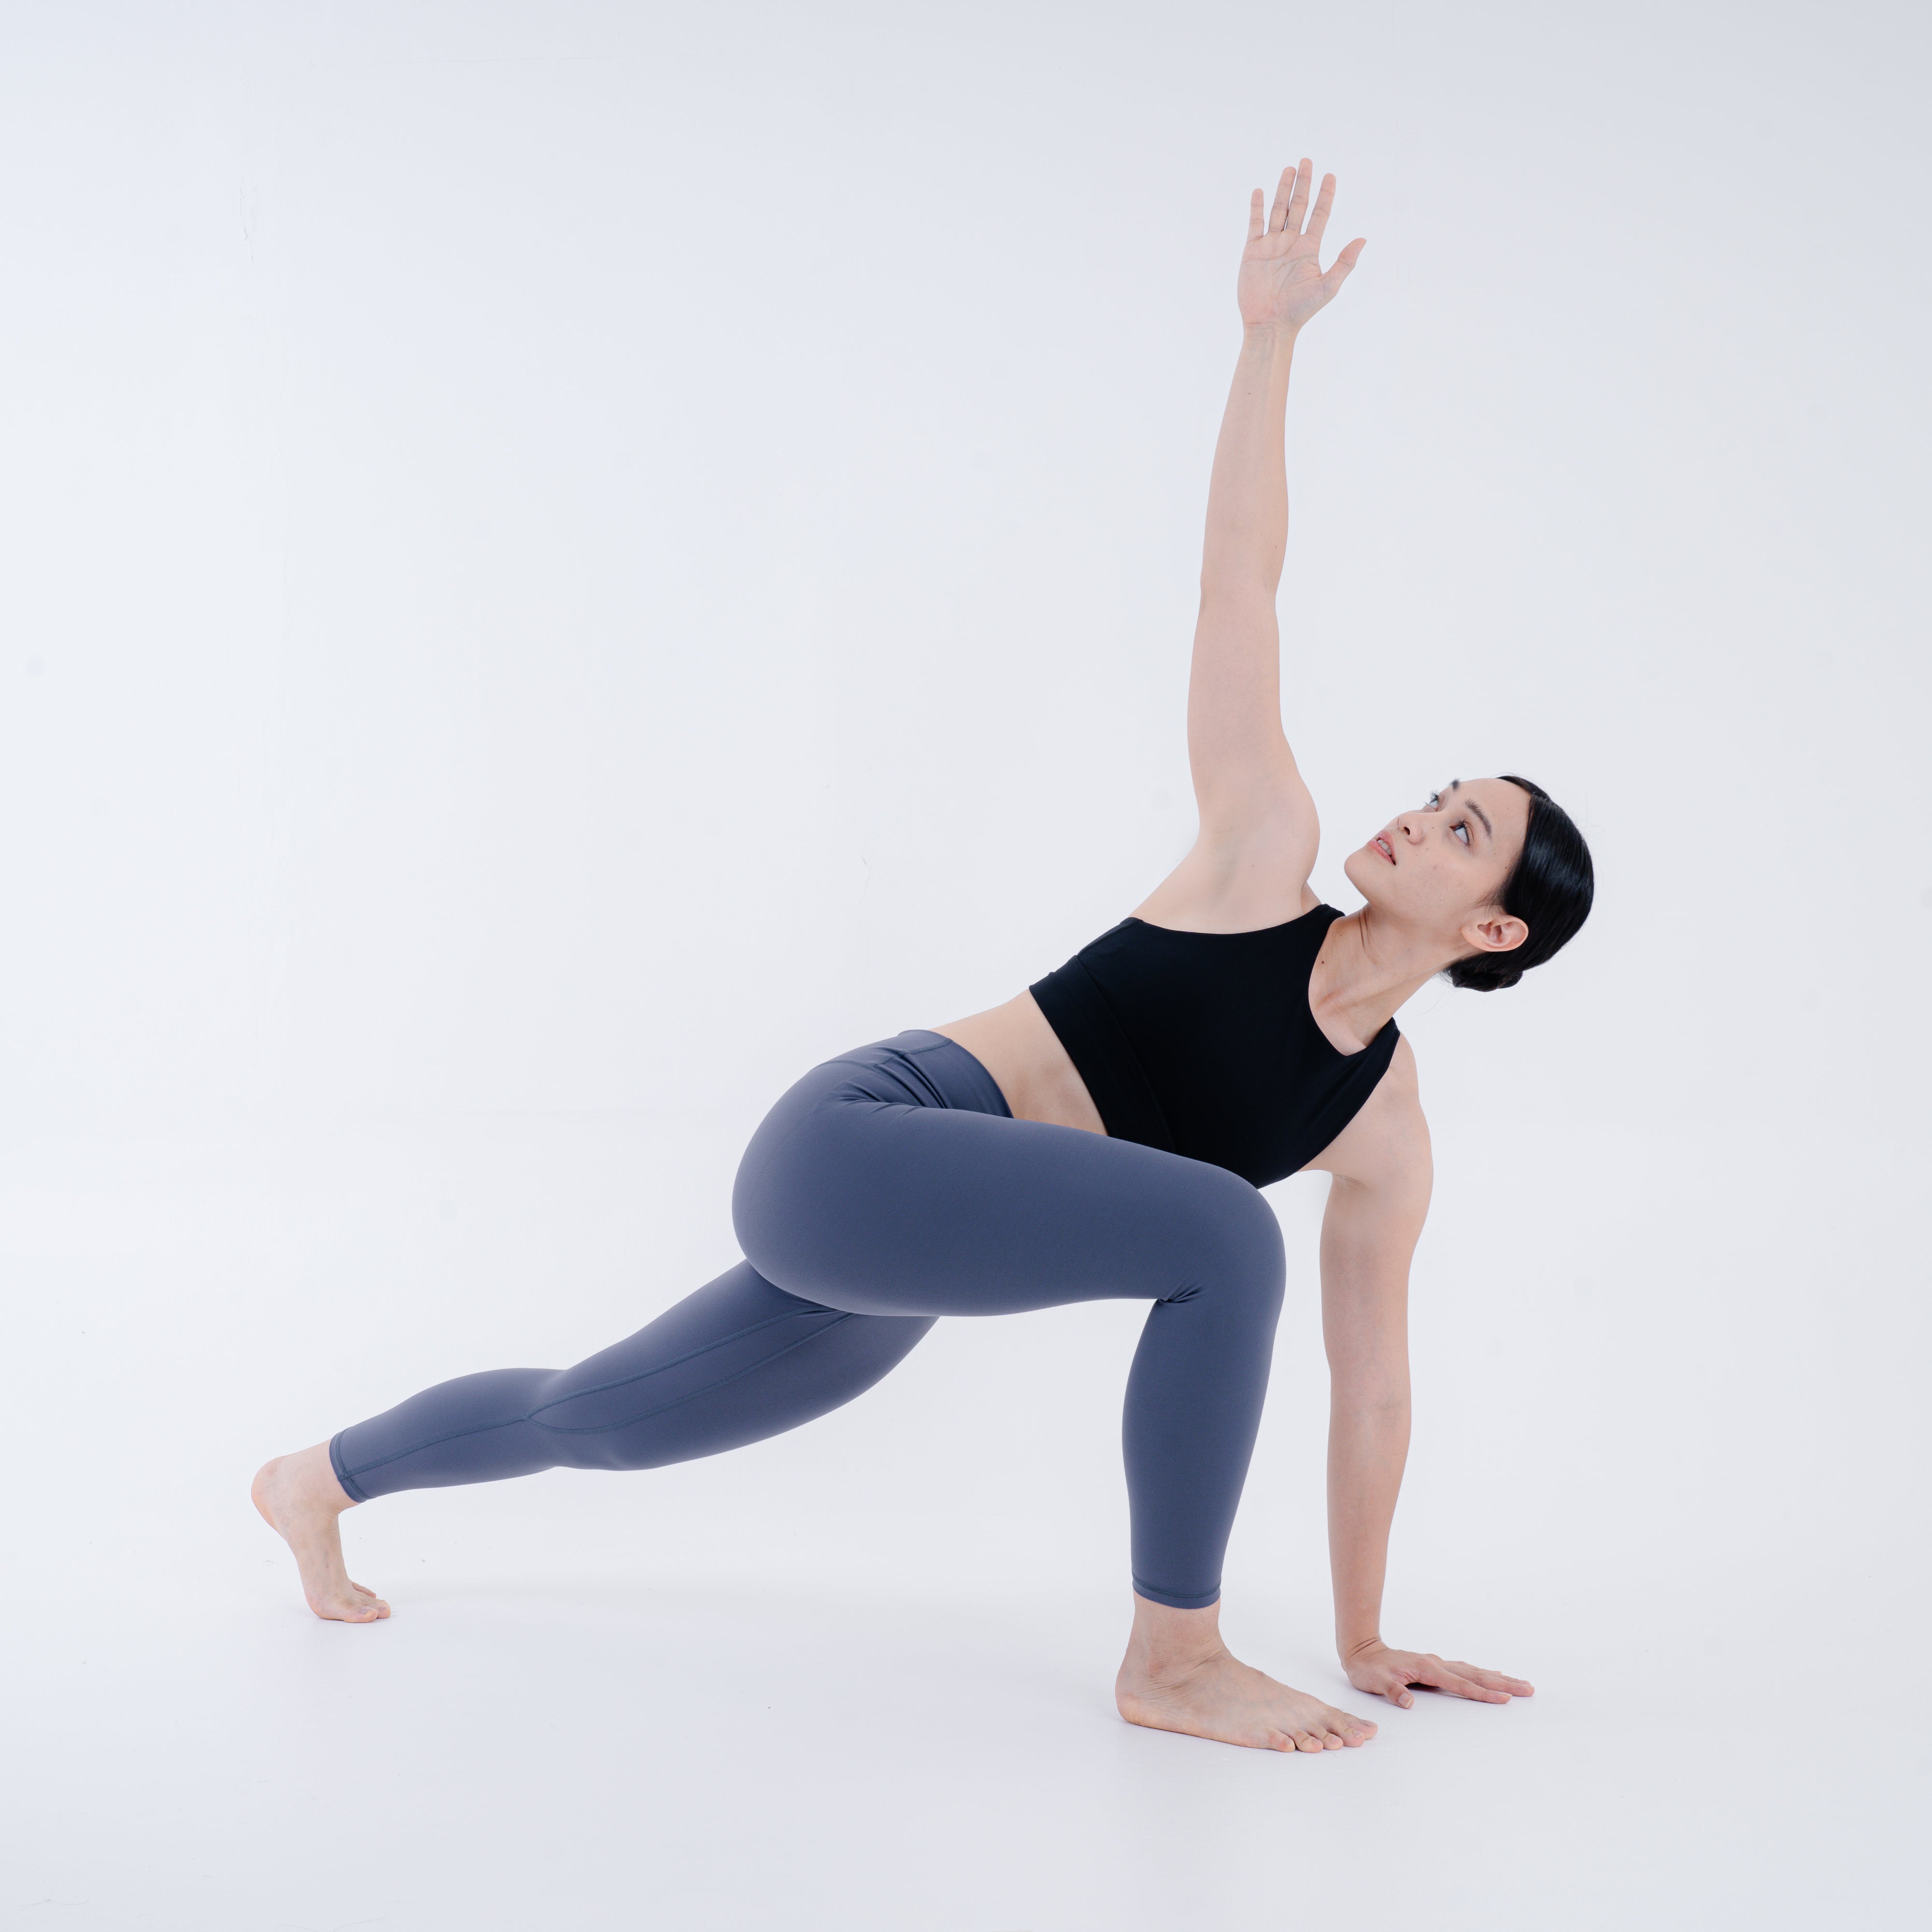 Women Yoga Full Length Leggings